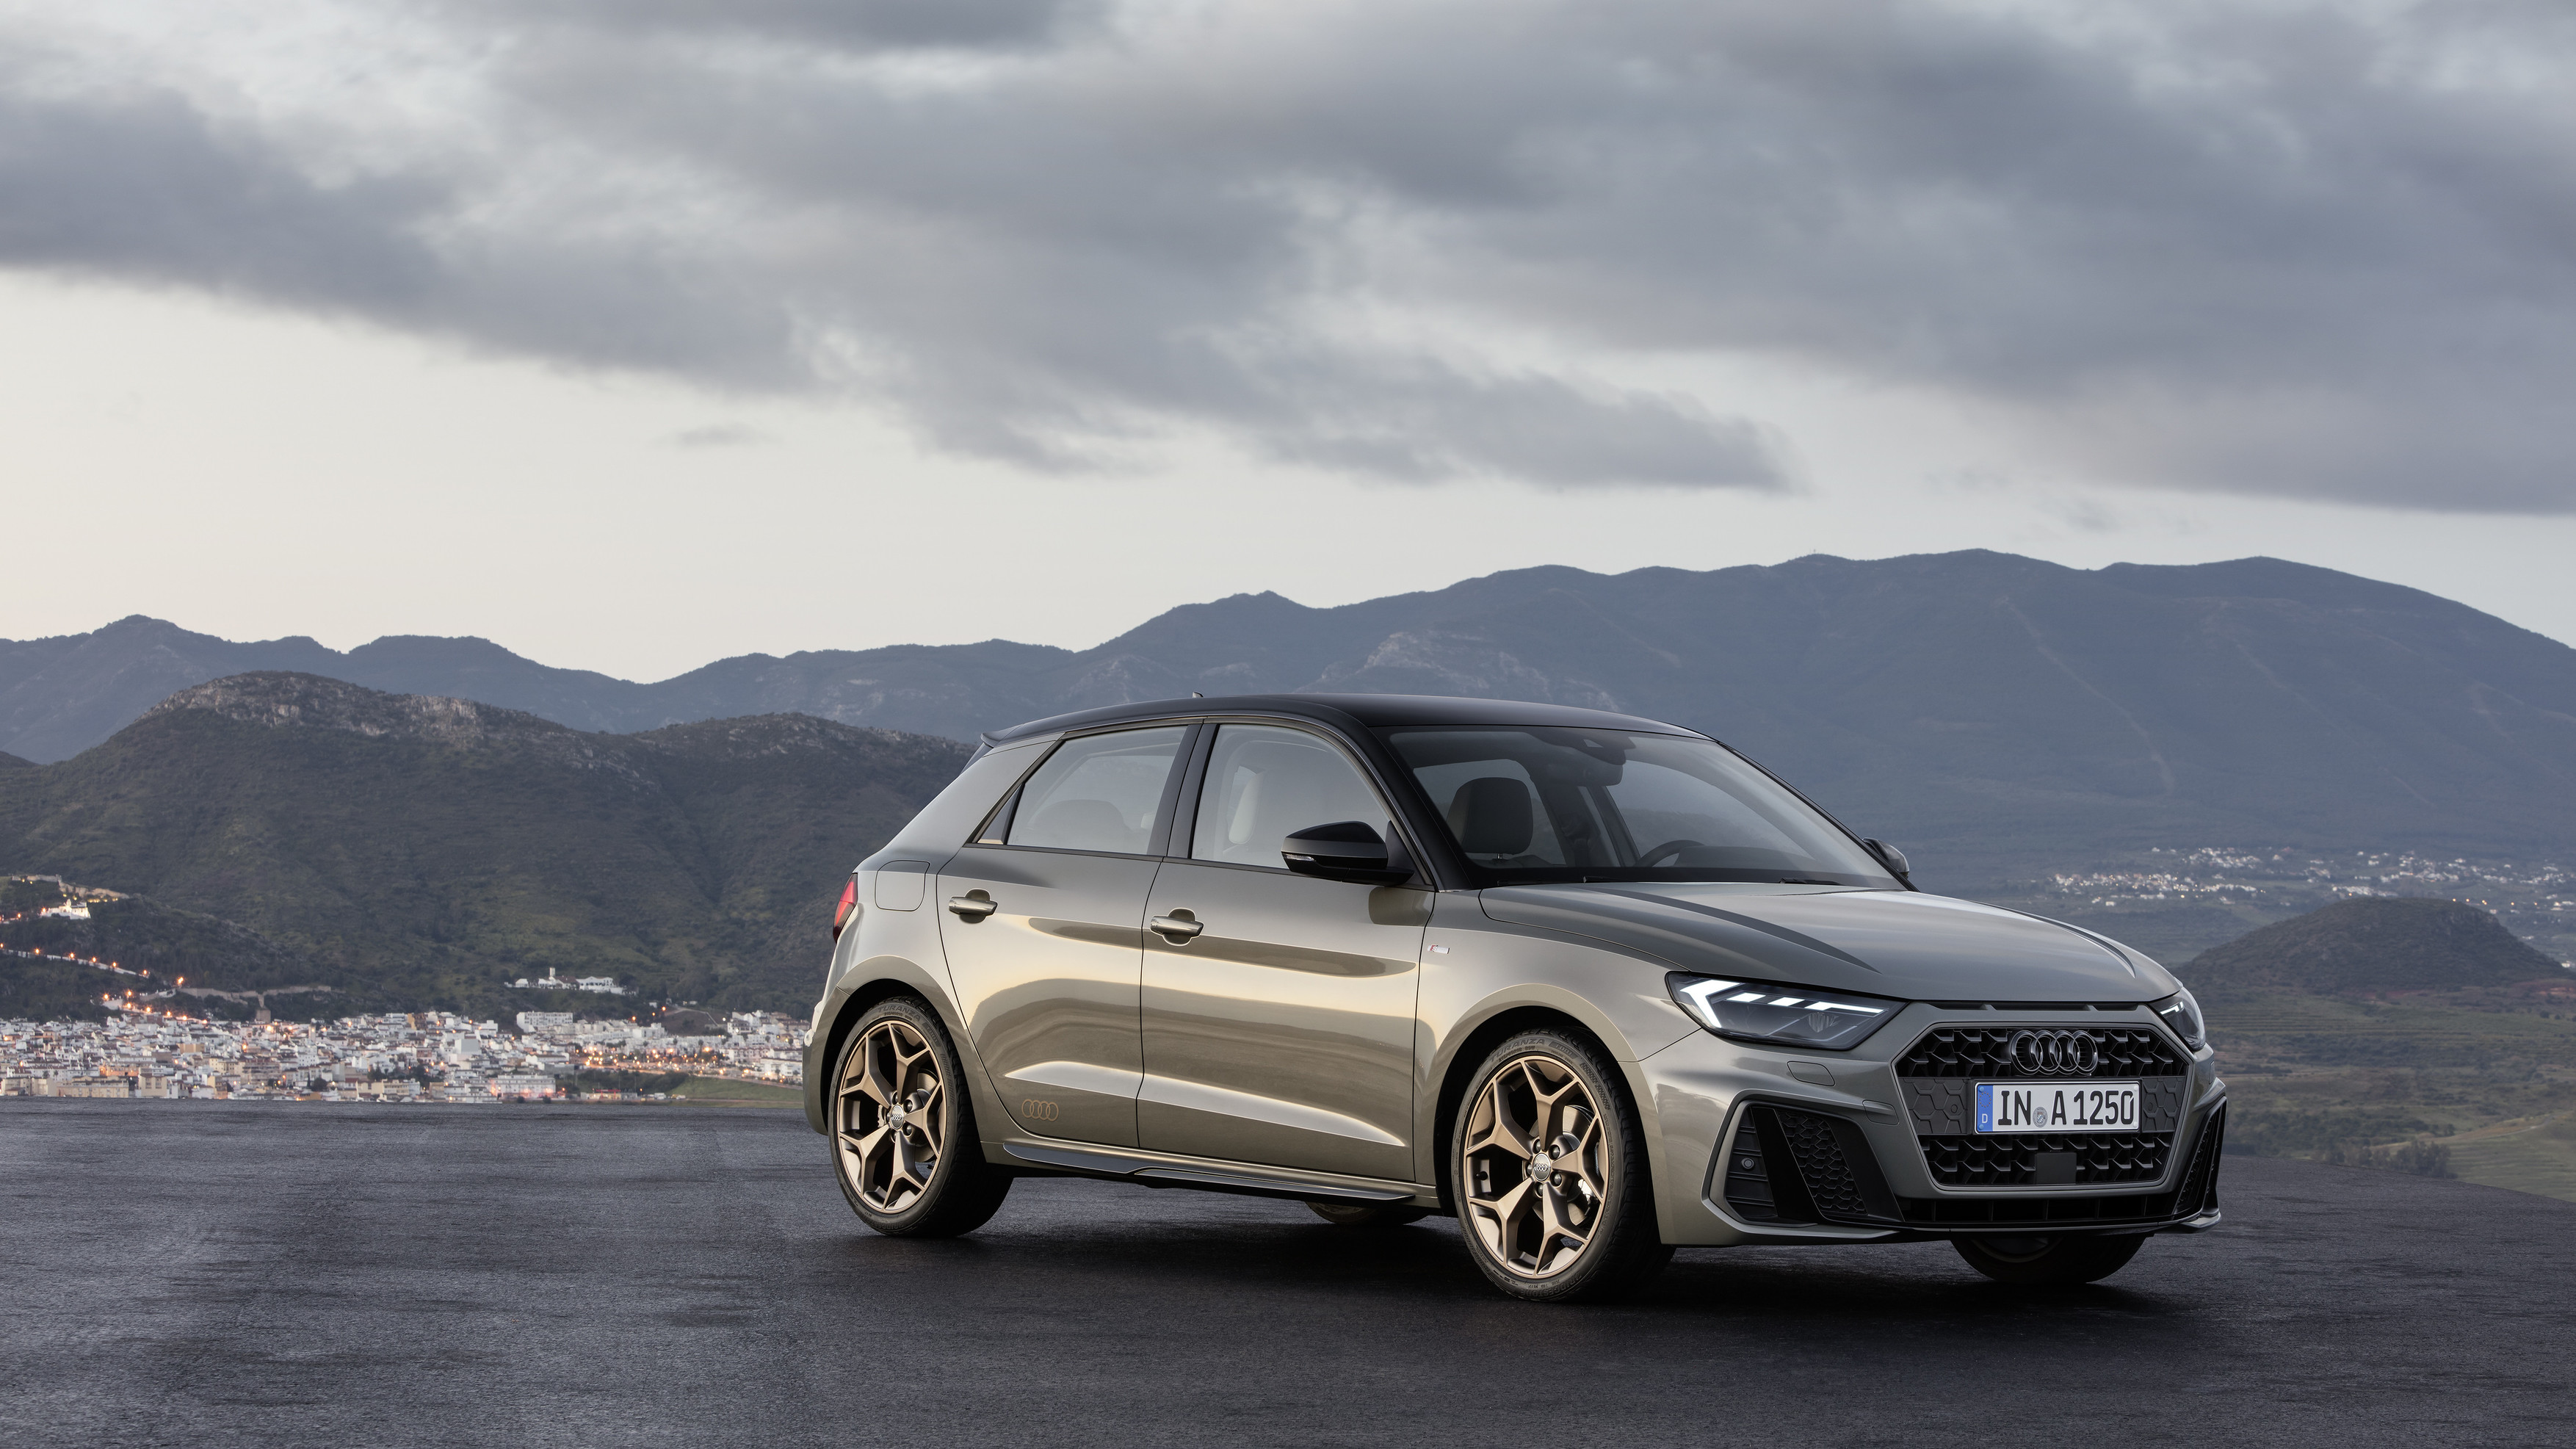 Фотографии новой Audi A1 Sportback появлялись в течение всей недели.